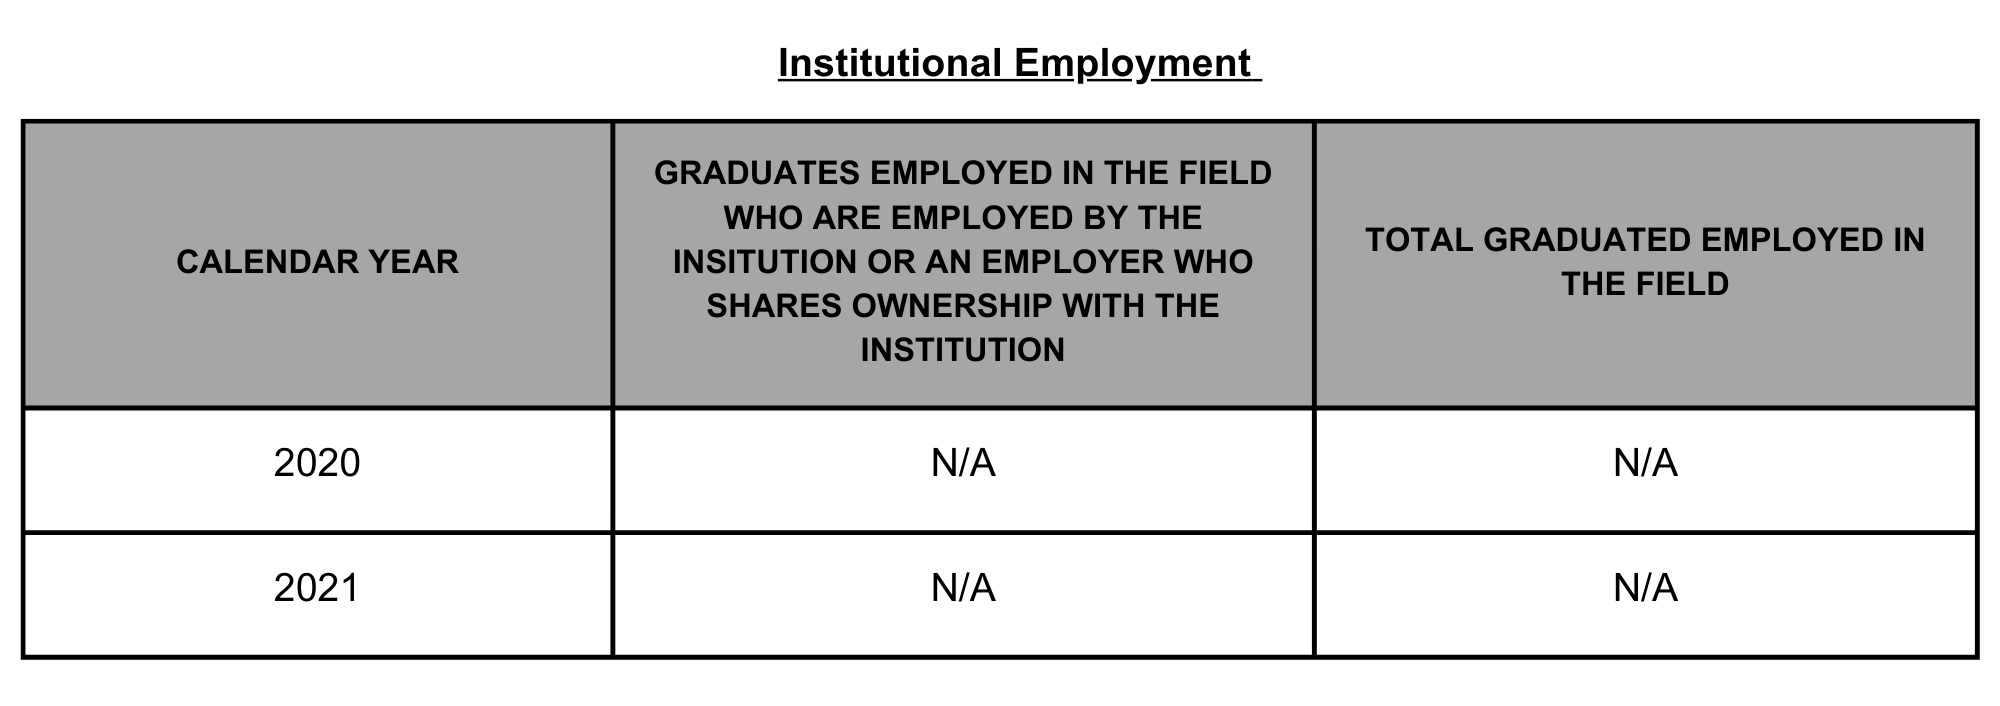 06 SPFS Institutional Employment LVL 1 PIF DVD CA